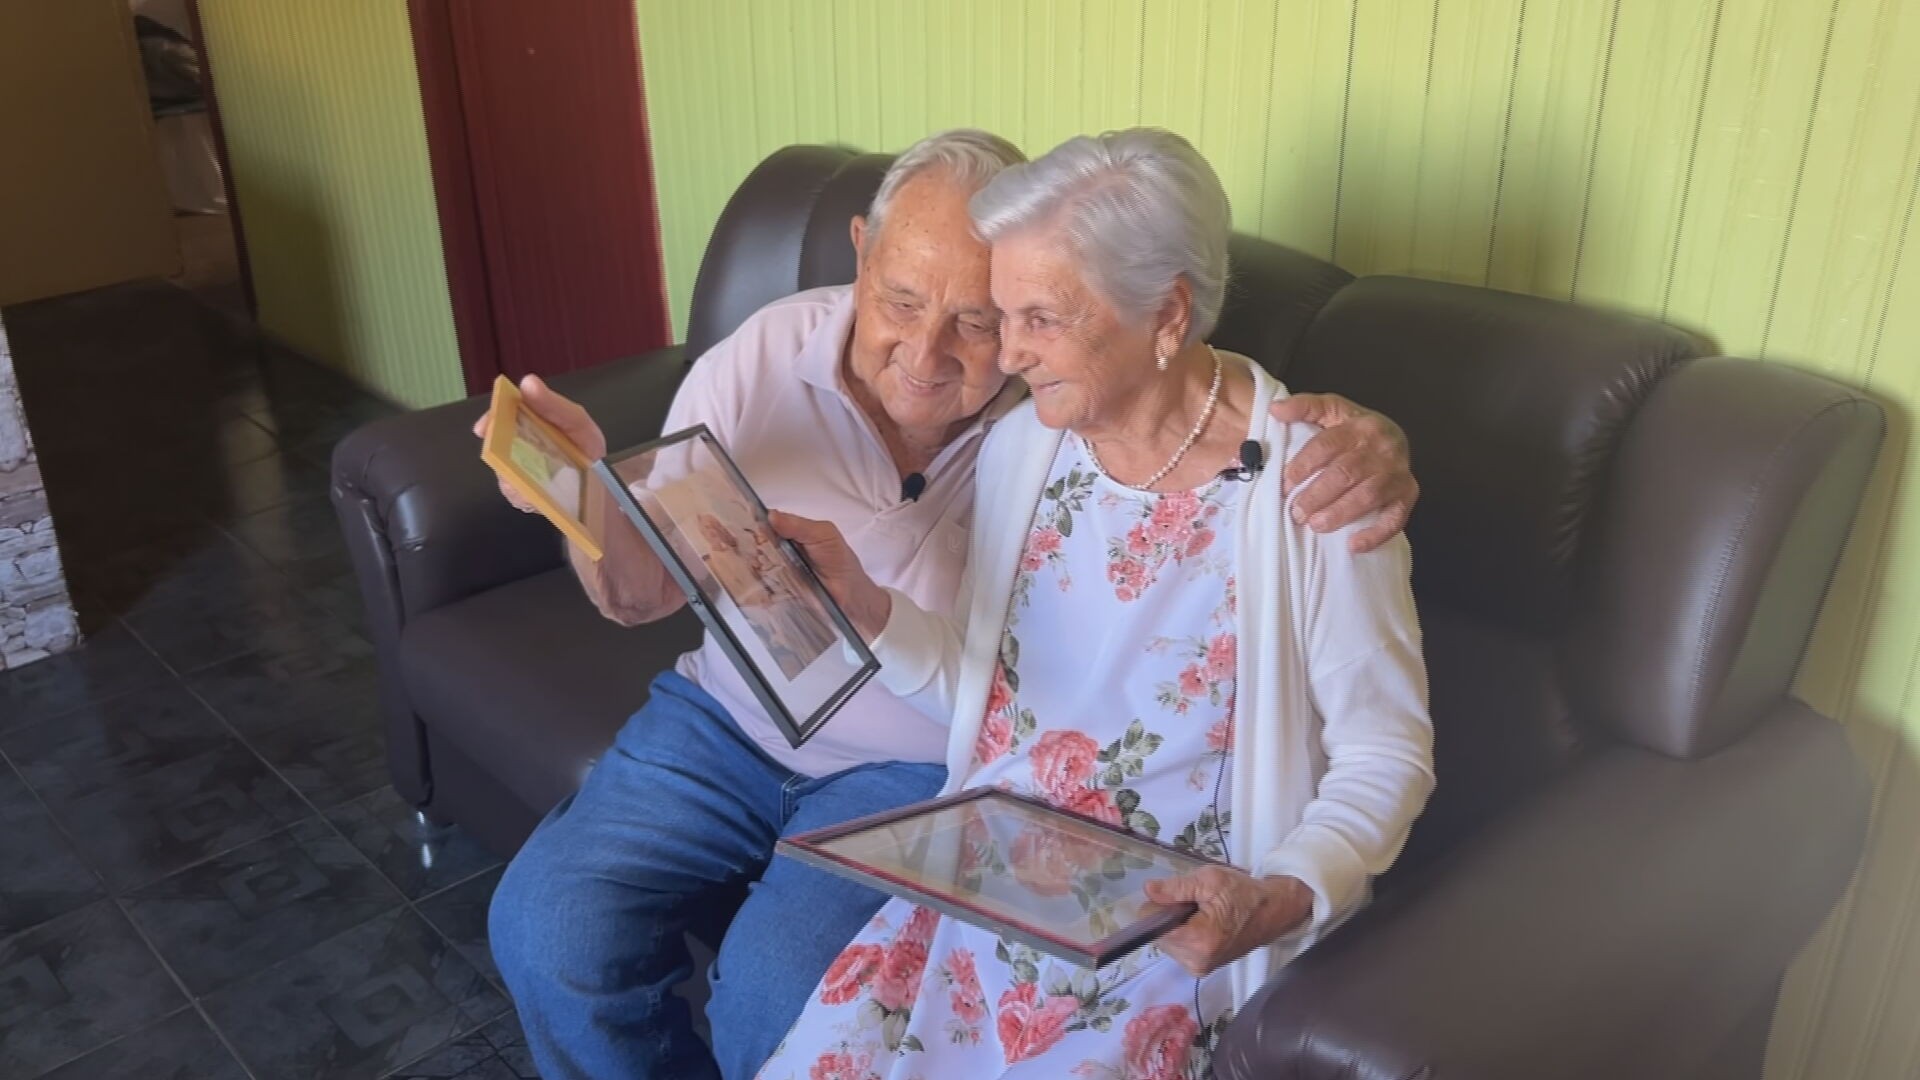 Há 70 anos junto, casal de idosos que faz sucesso na internet conta como tudo começou em festa: 'Tirei ela para dançar'